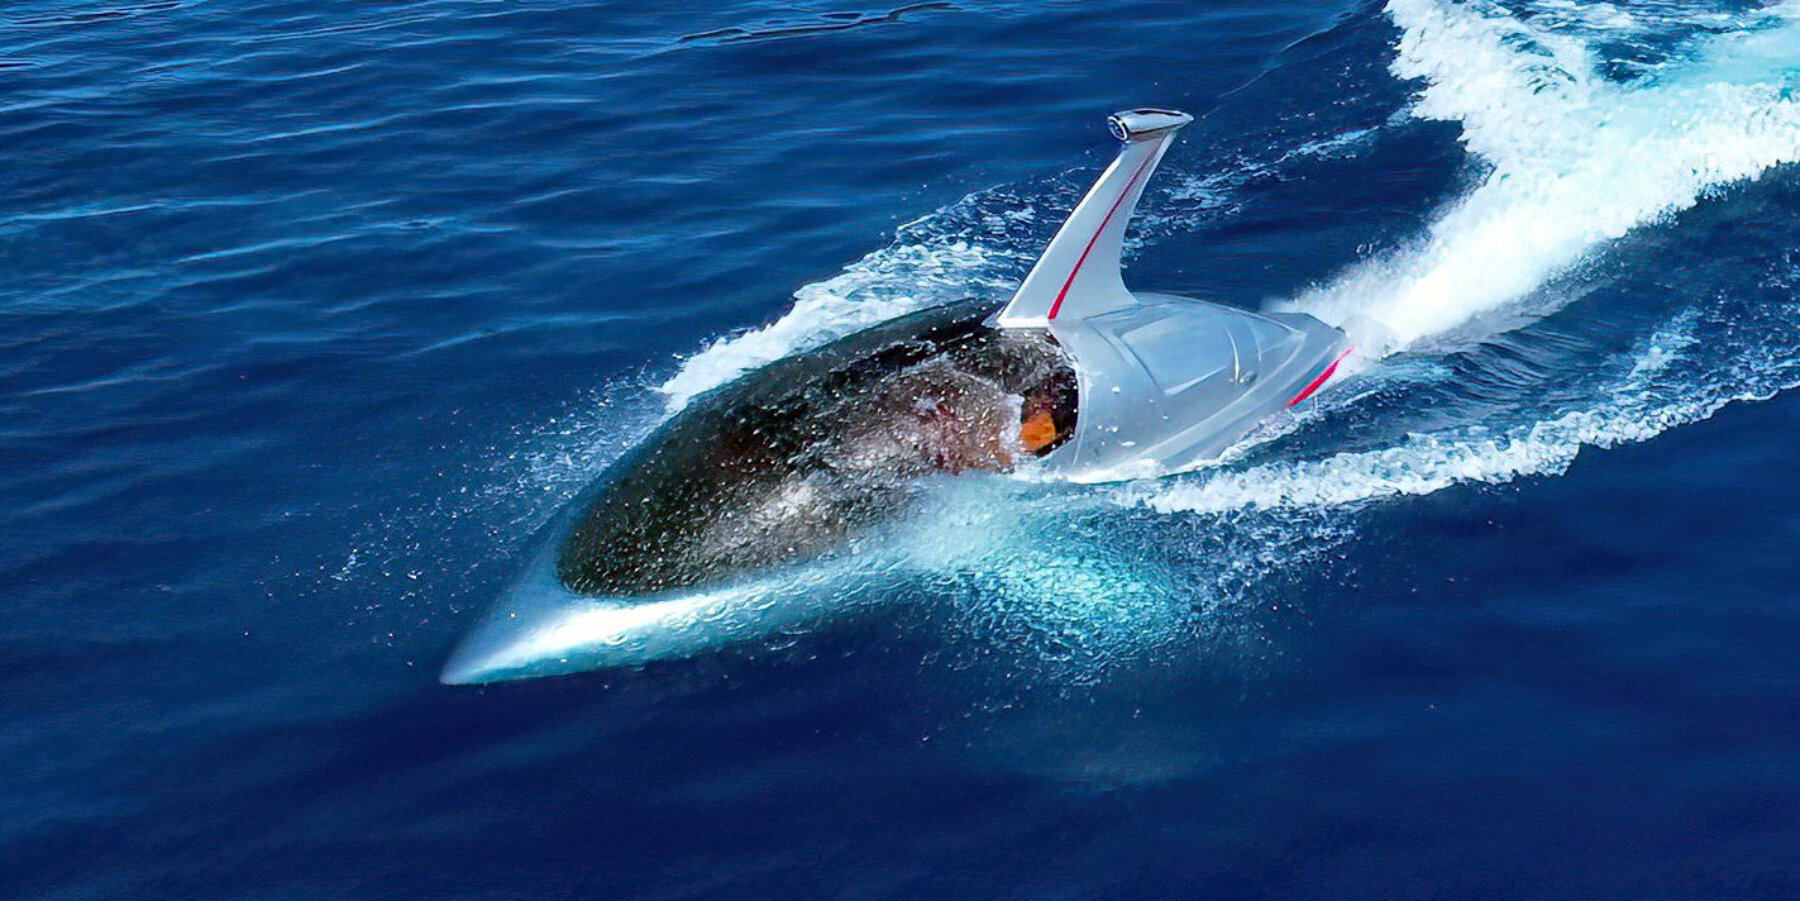 Underwater Jetski  Jet ski, Underwater, Water crafts